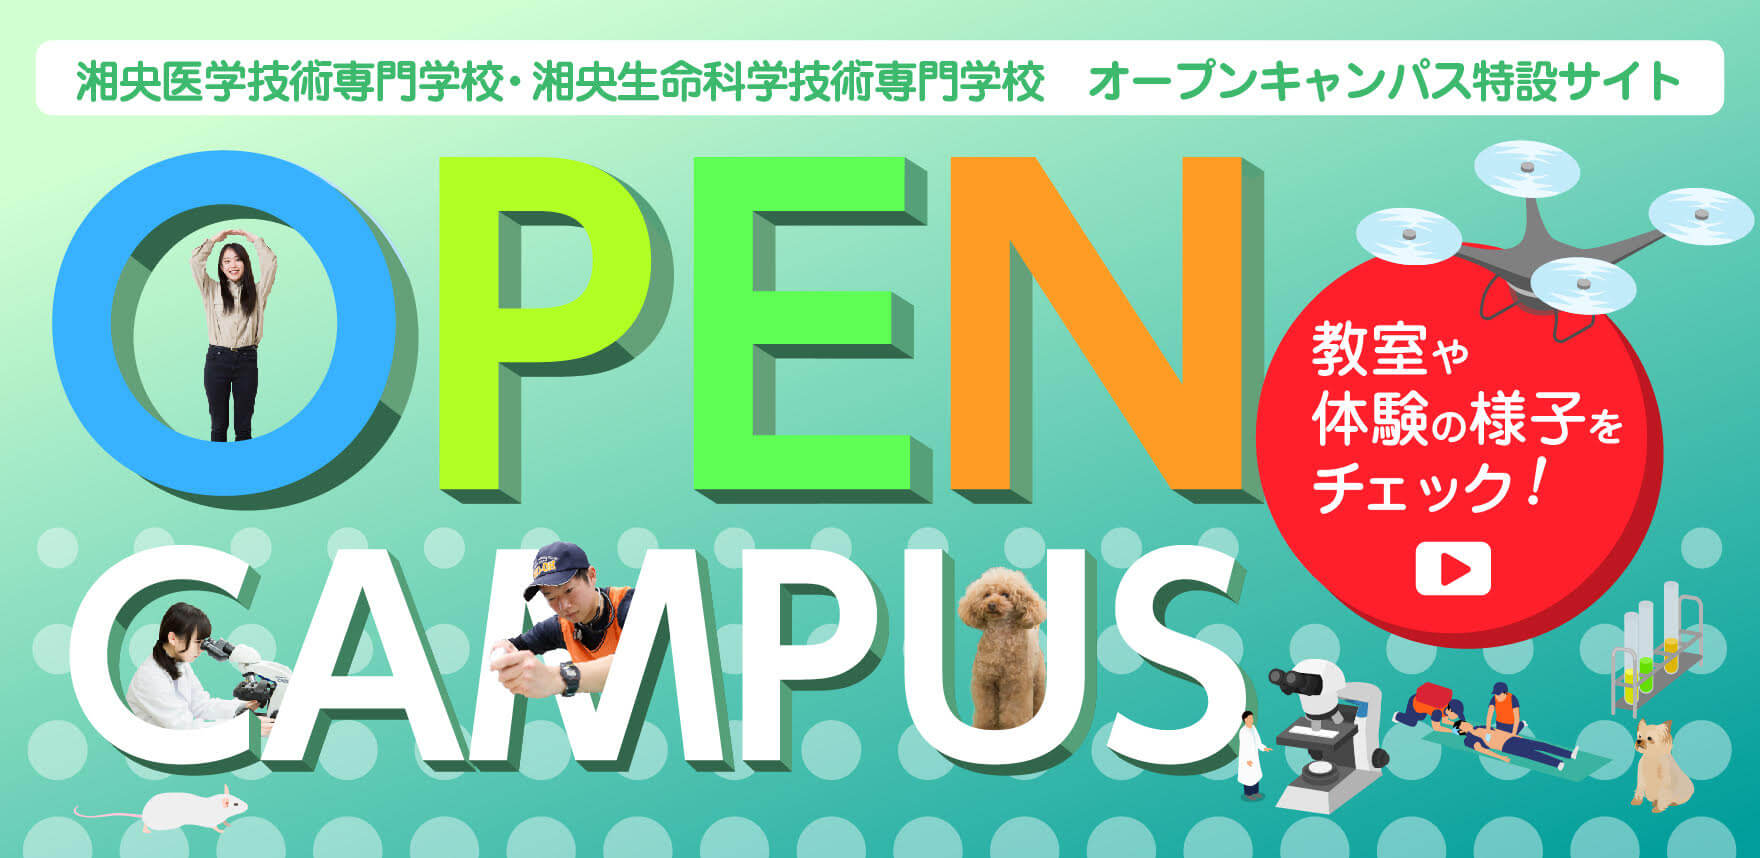 湘央学園 オープンキャンパス特設サイト